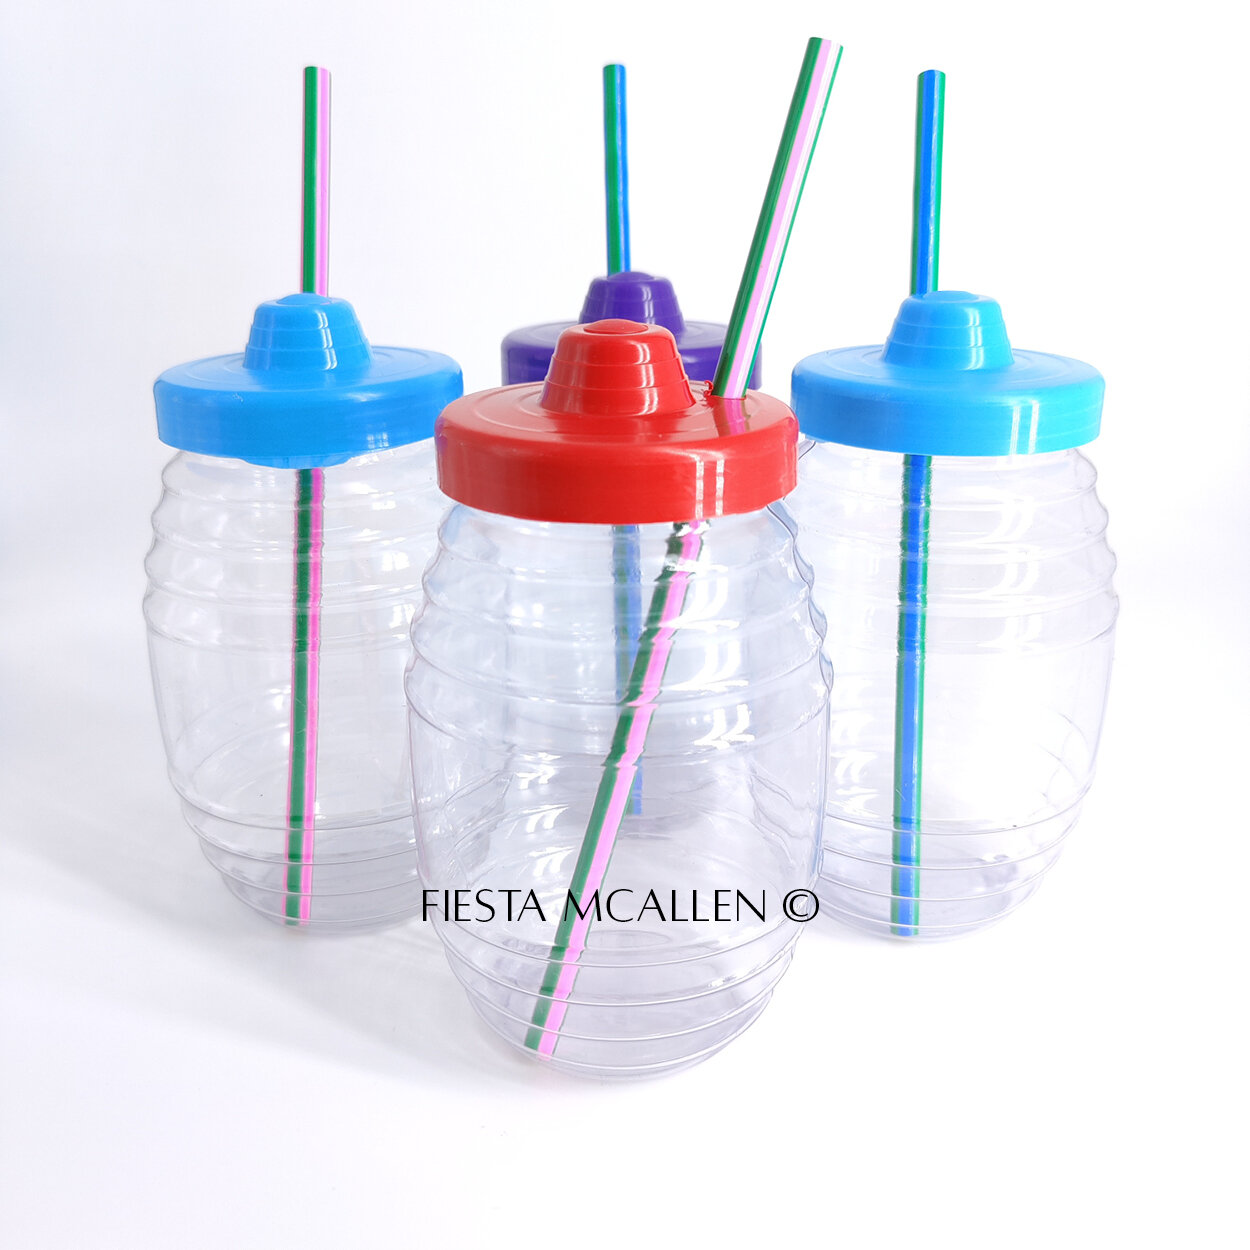 5-pack Vitrolero Plastic Barrels with straw lid 33.8 fl oz LA TIENDITA  ESSENTIALS